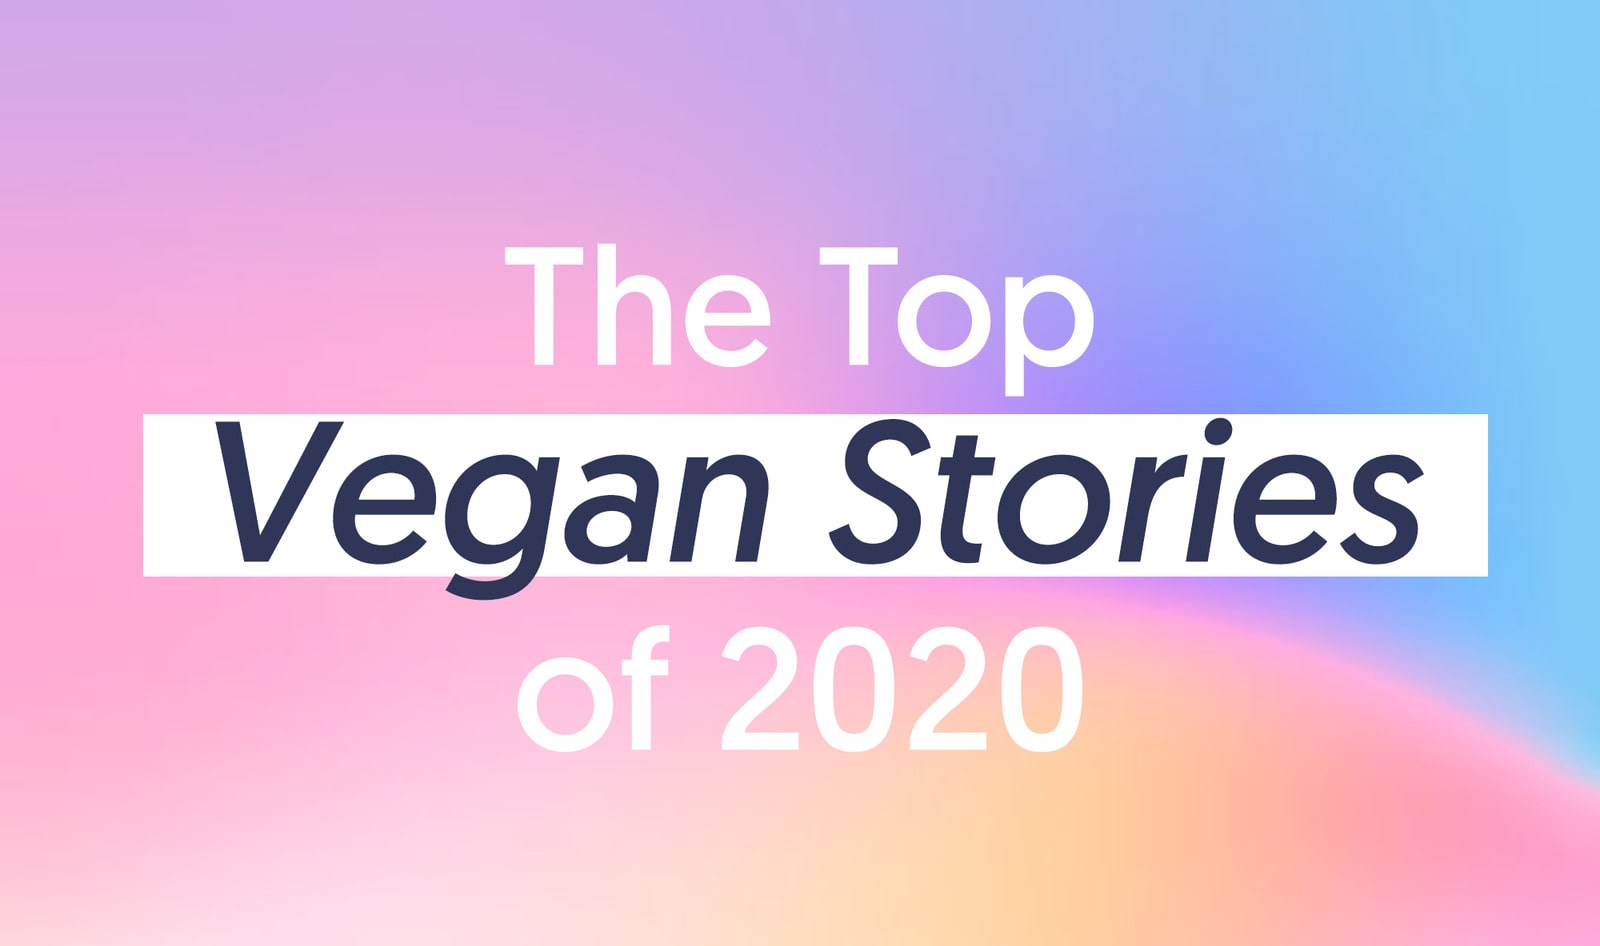 The Top 20 Vegan Stories of 2020